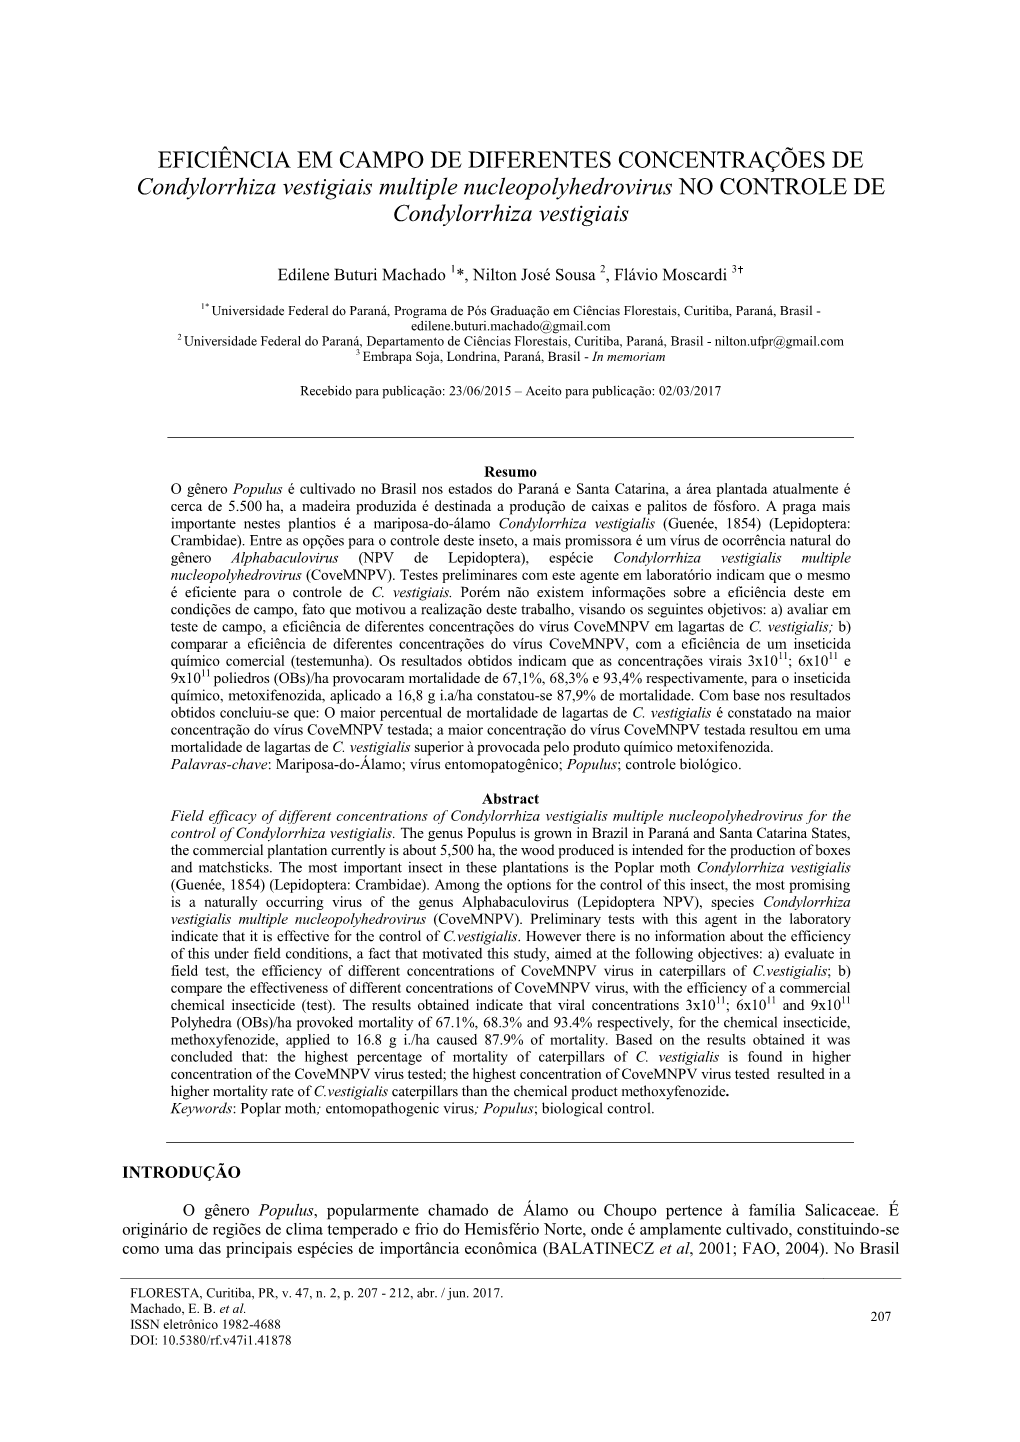 EFICIÊNCIA EM CAMPO DE DIFERENTES CONCENTRAÇÕES DE Condylorrhiza Vestigiais Multiple Nucleopolyhedrovirus NO CONTROLE DE Condylorrhiza Vestigiais